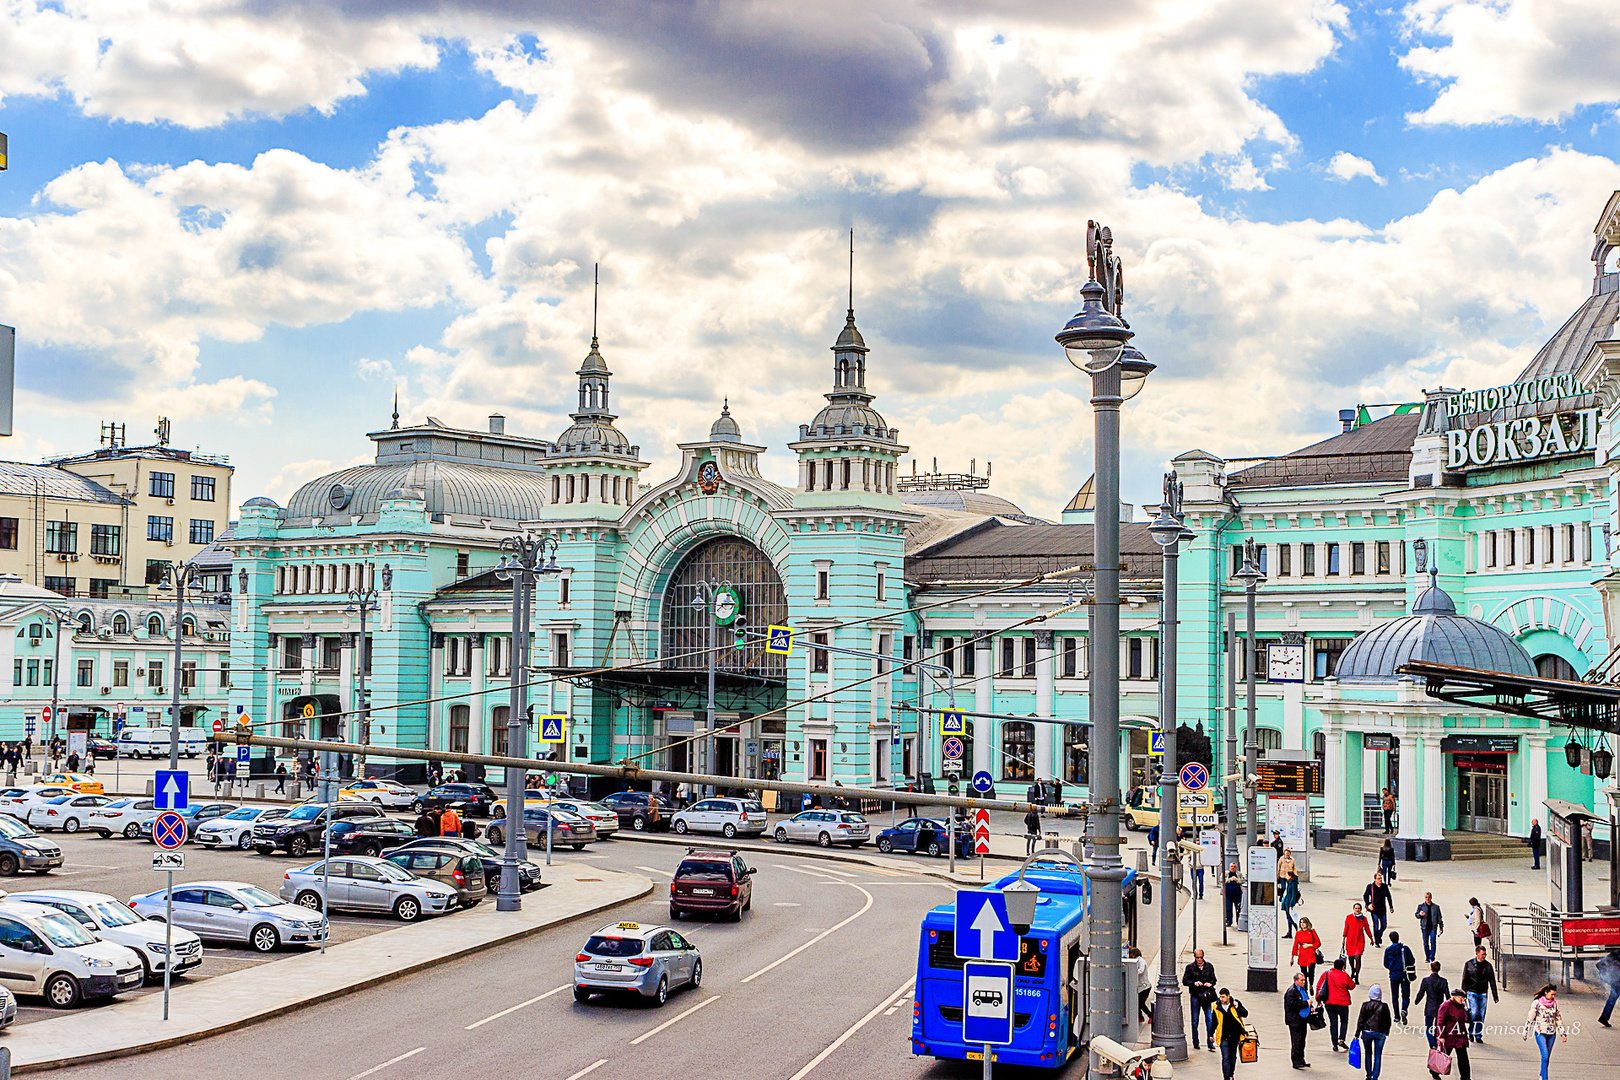 казанский вокзал вход